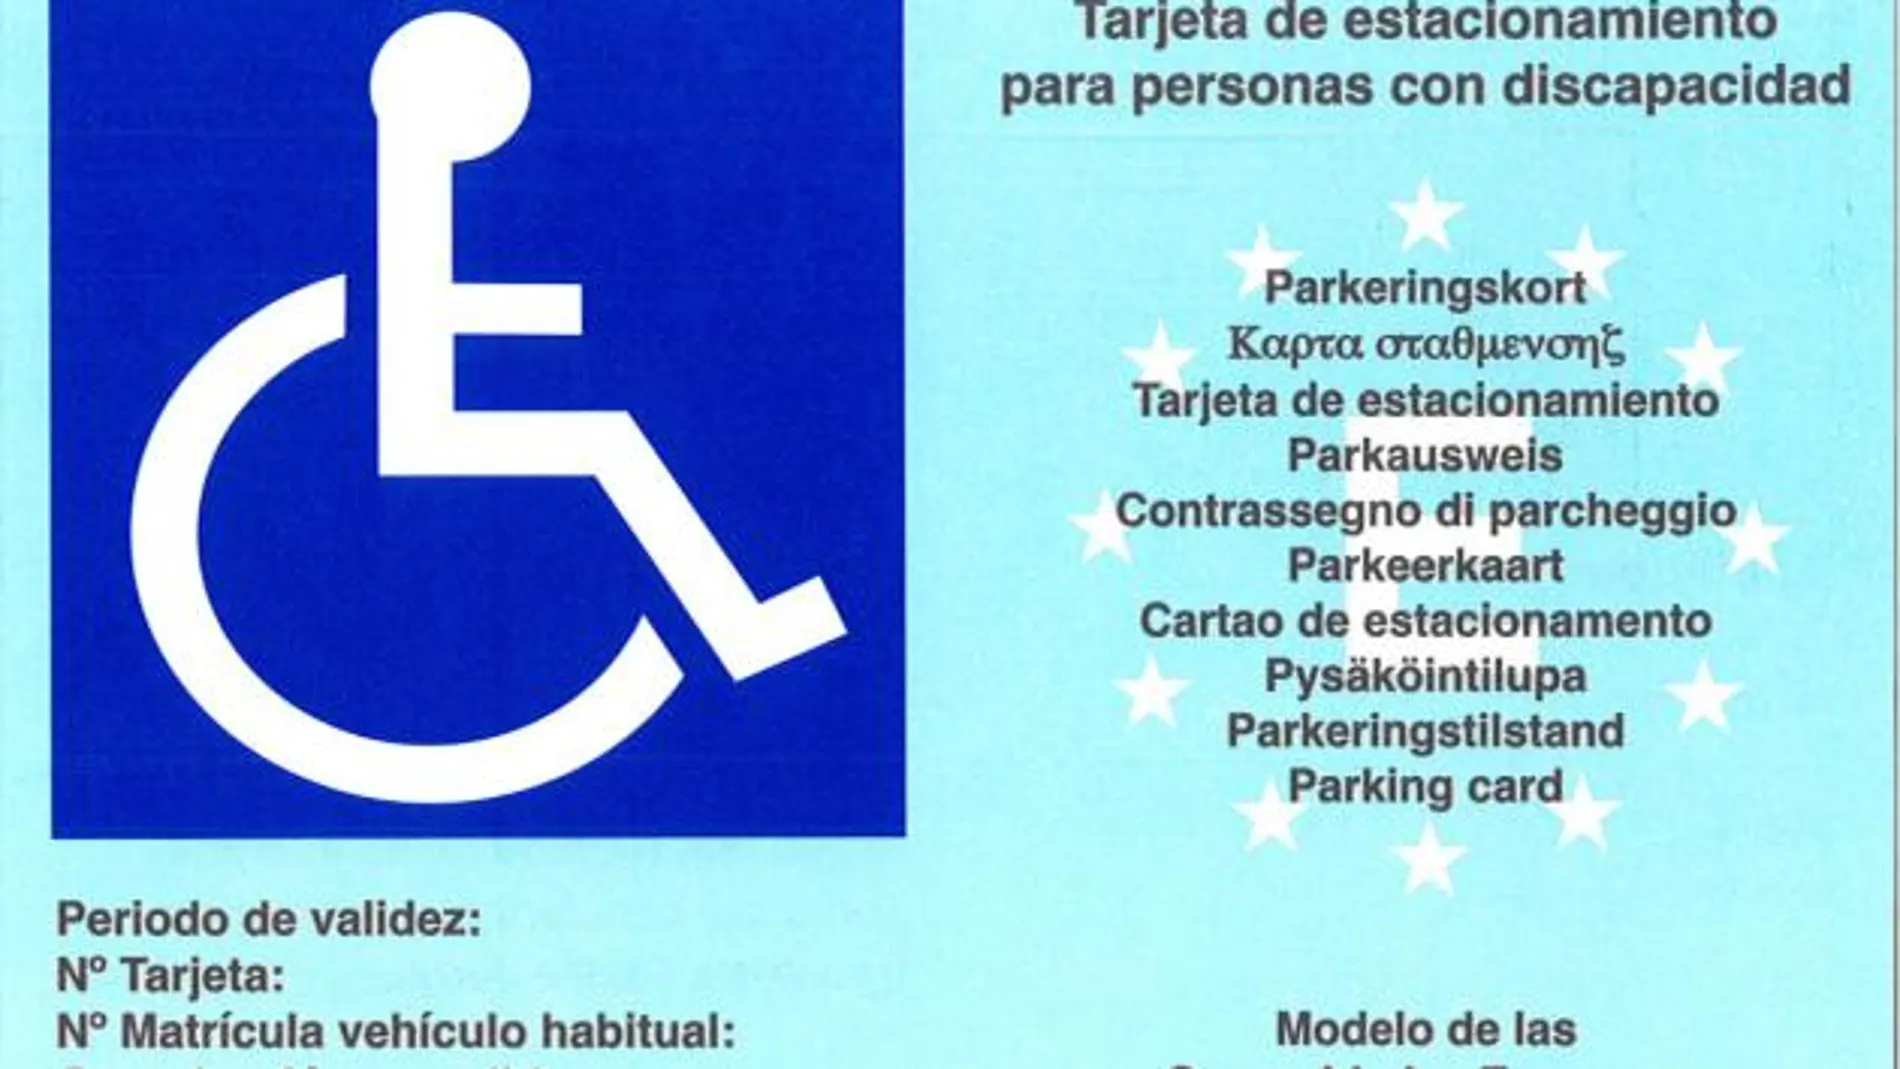 Tarjeta de estacionamiento para personas con movilidad reducida